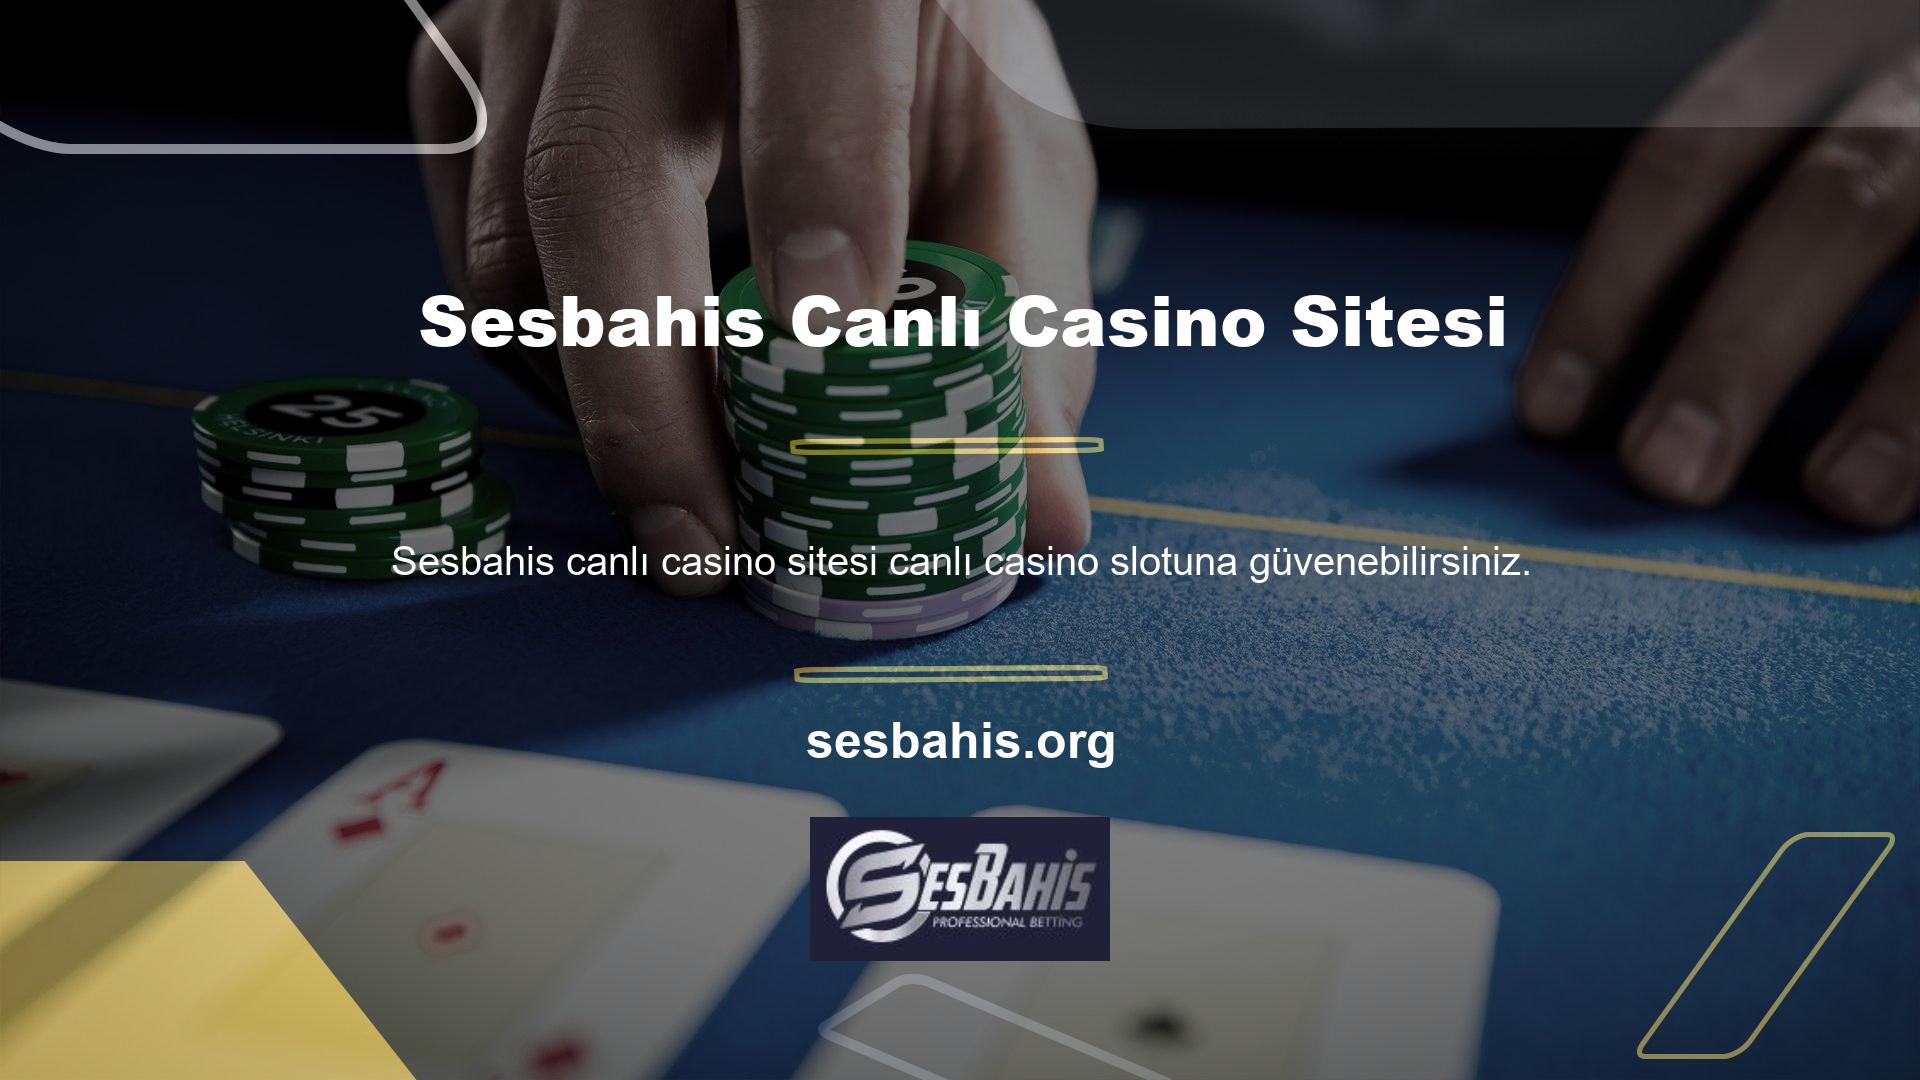 Casinolar, en güvenilir casino türü olarak slot makinelerine öncelik verme eğilimindedir